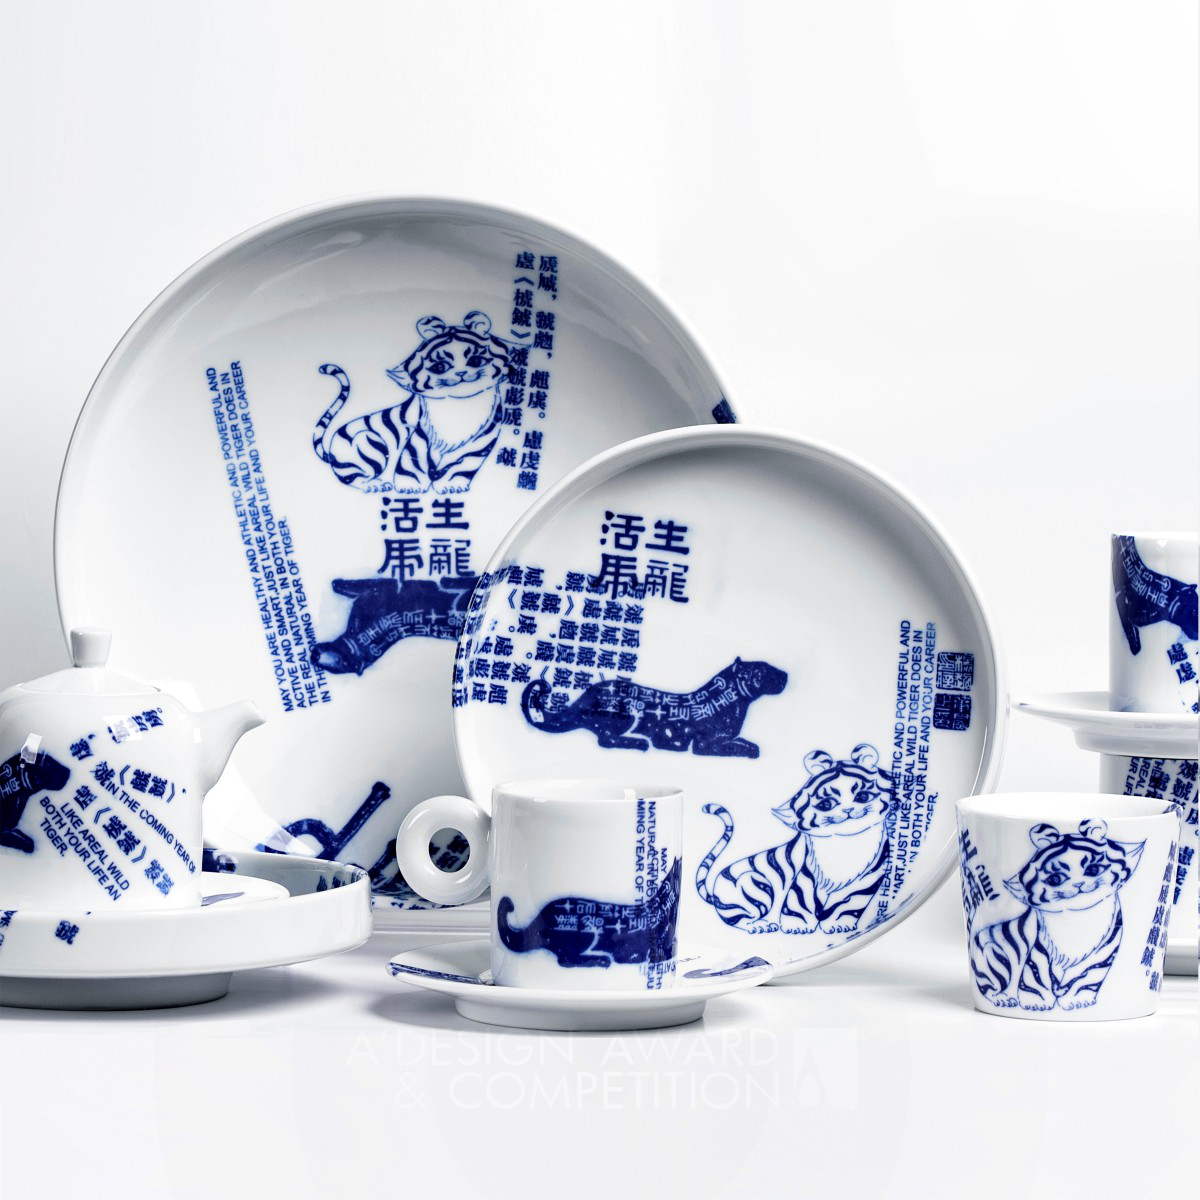 Тигр 2022: Уникальная Керамическая Посуда от Дизайнеров Chao Yang, Zhang Chen и Zhu Xuguang